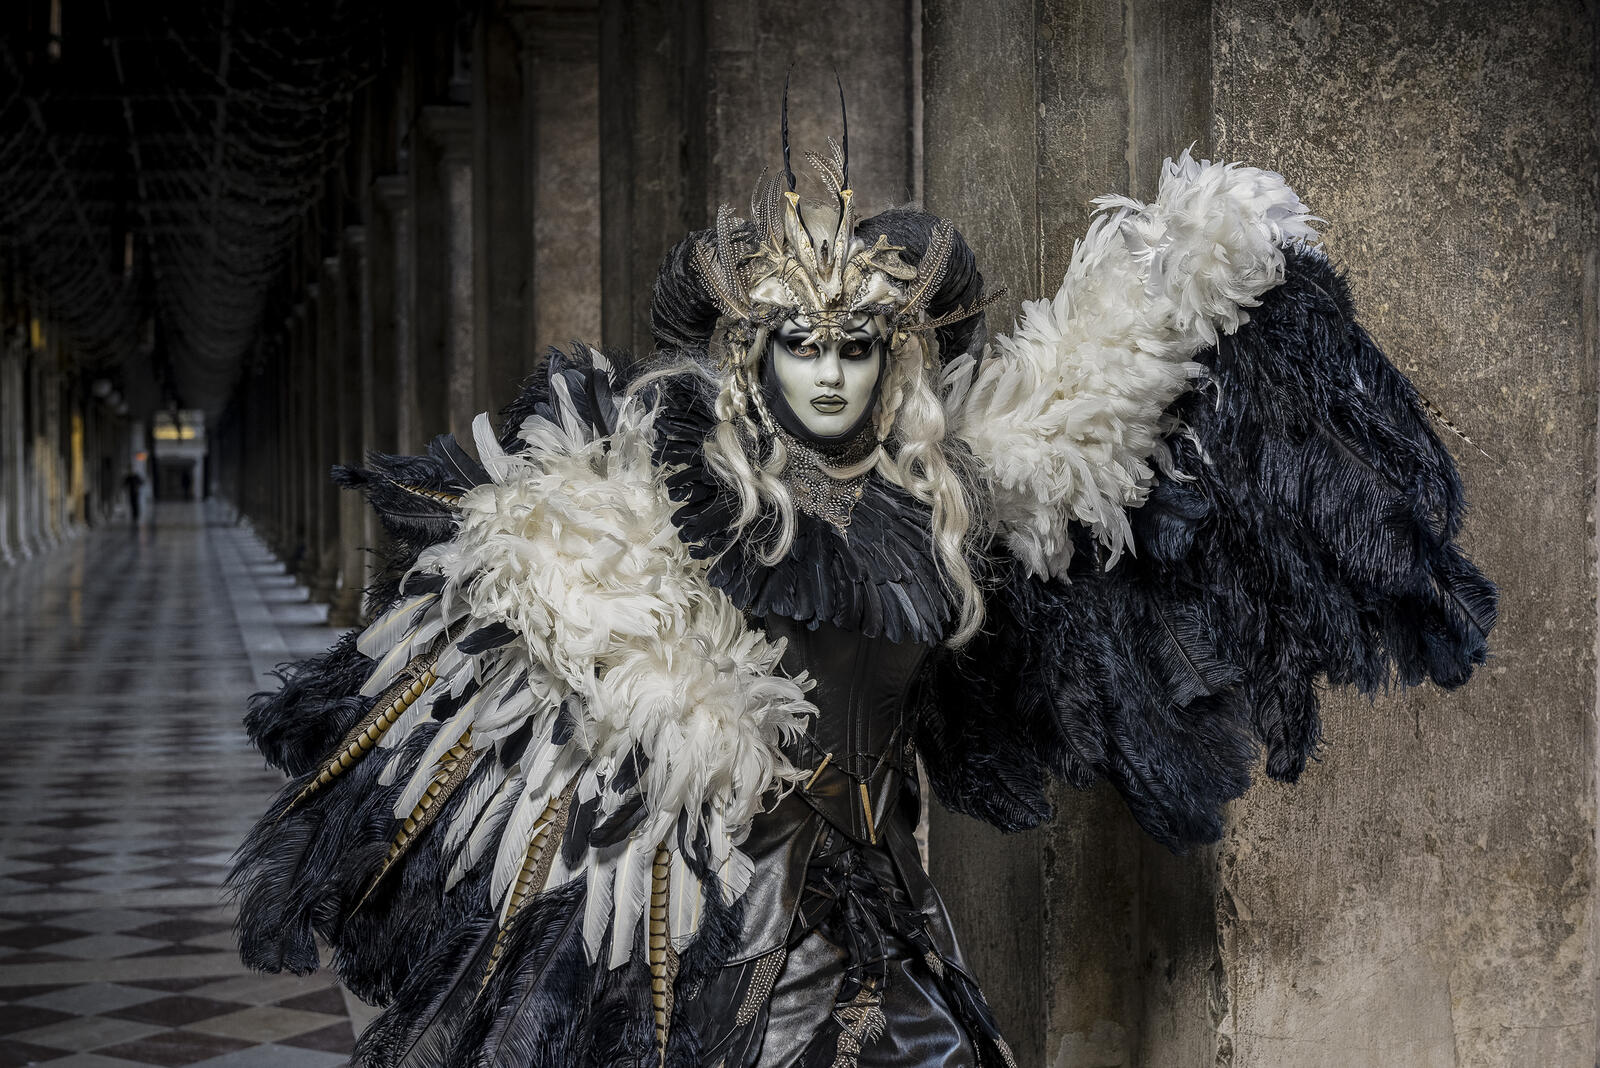 Wallpapers masks Venetian costume carnival on the desktop